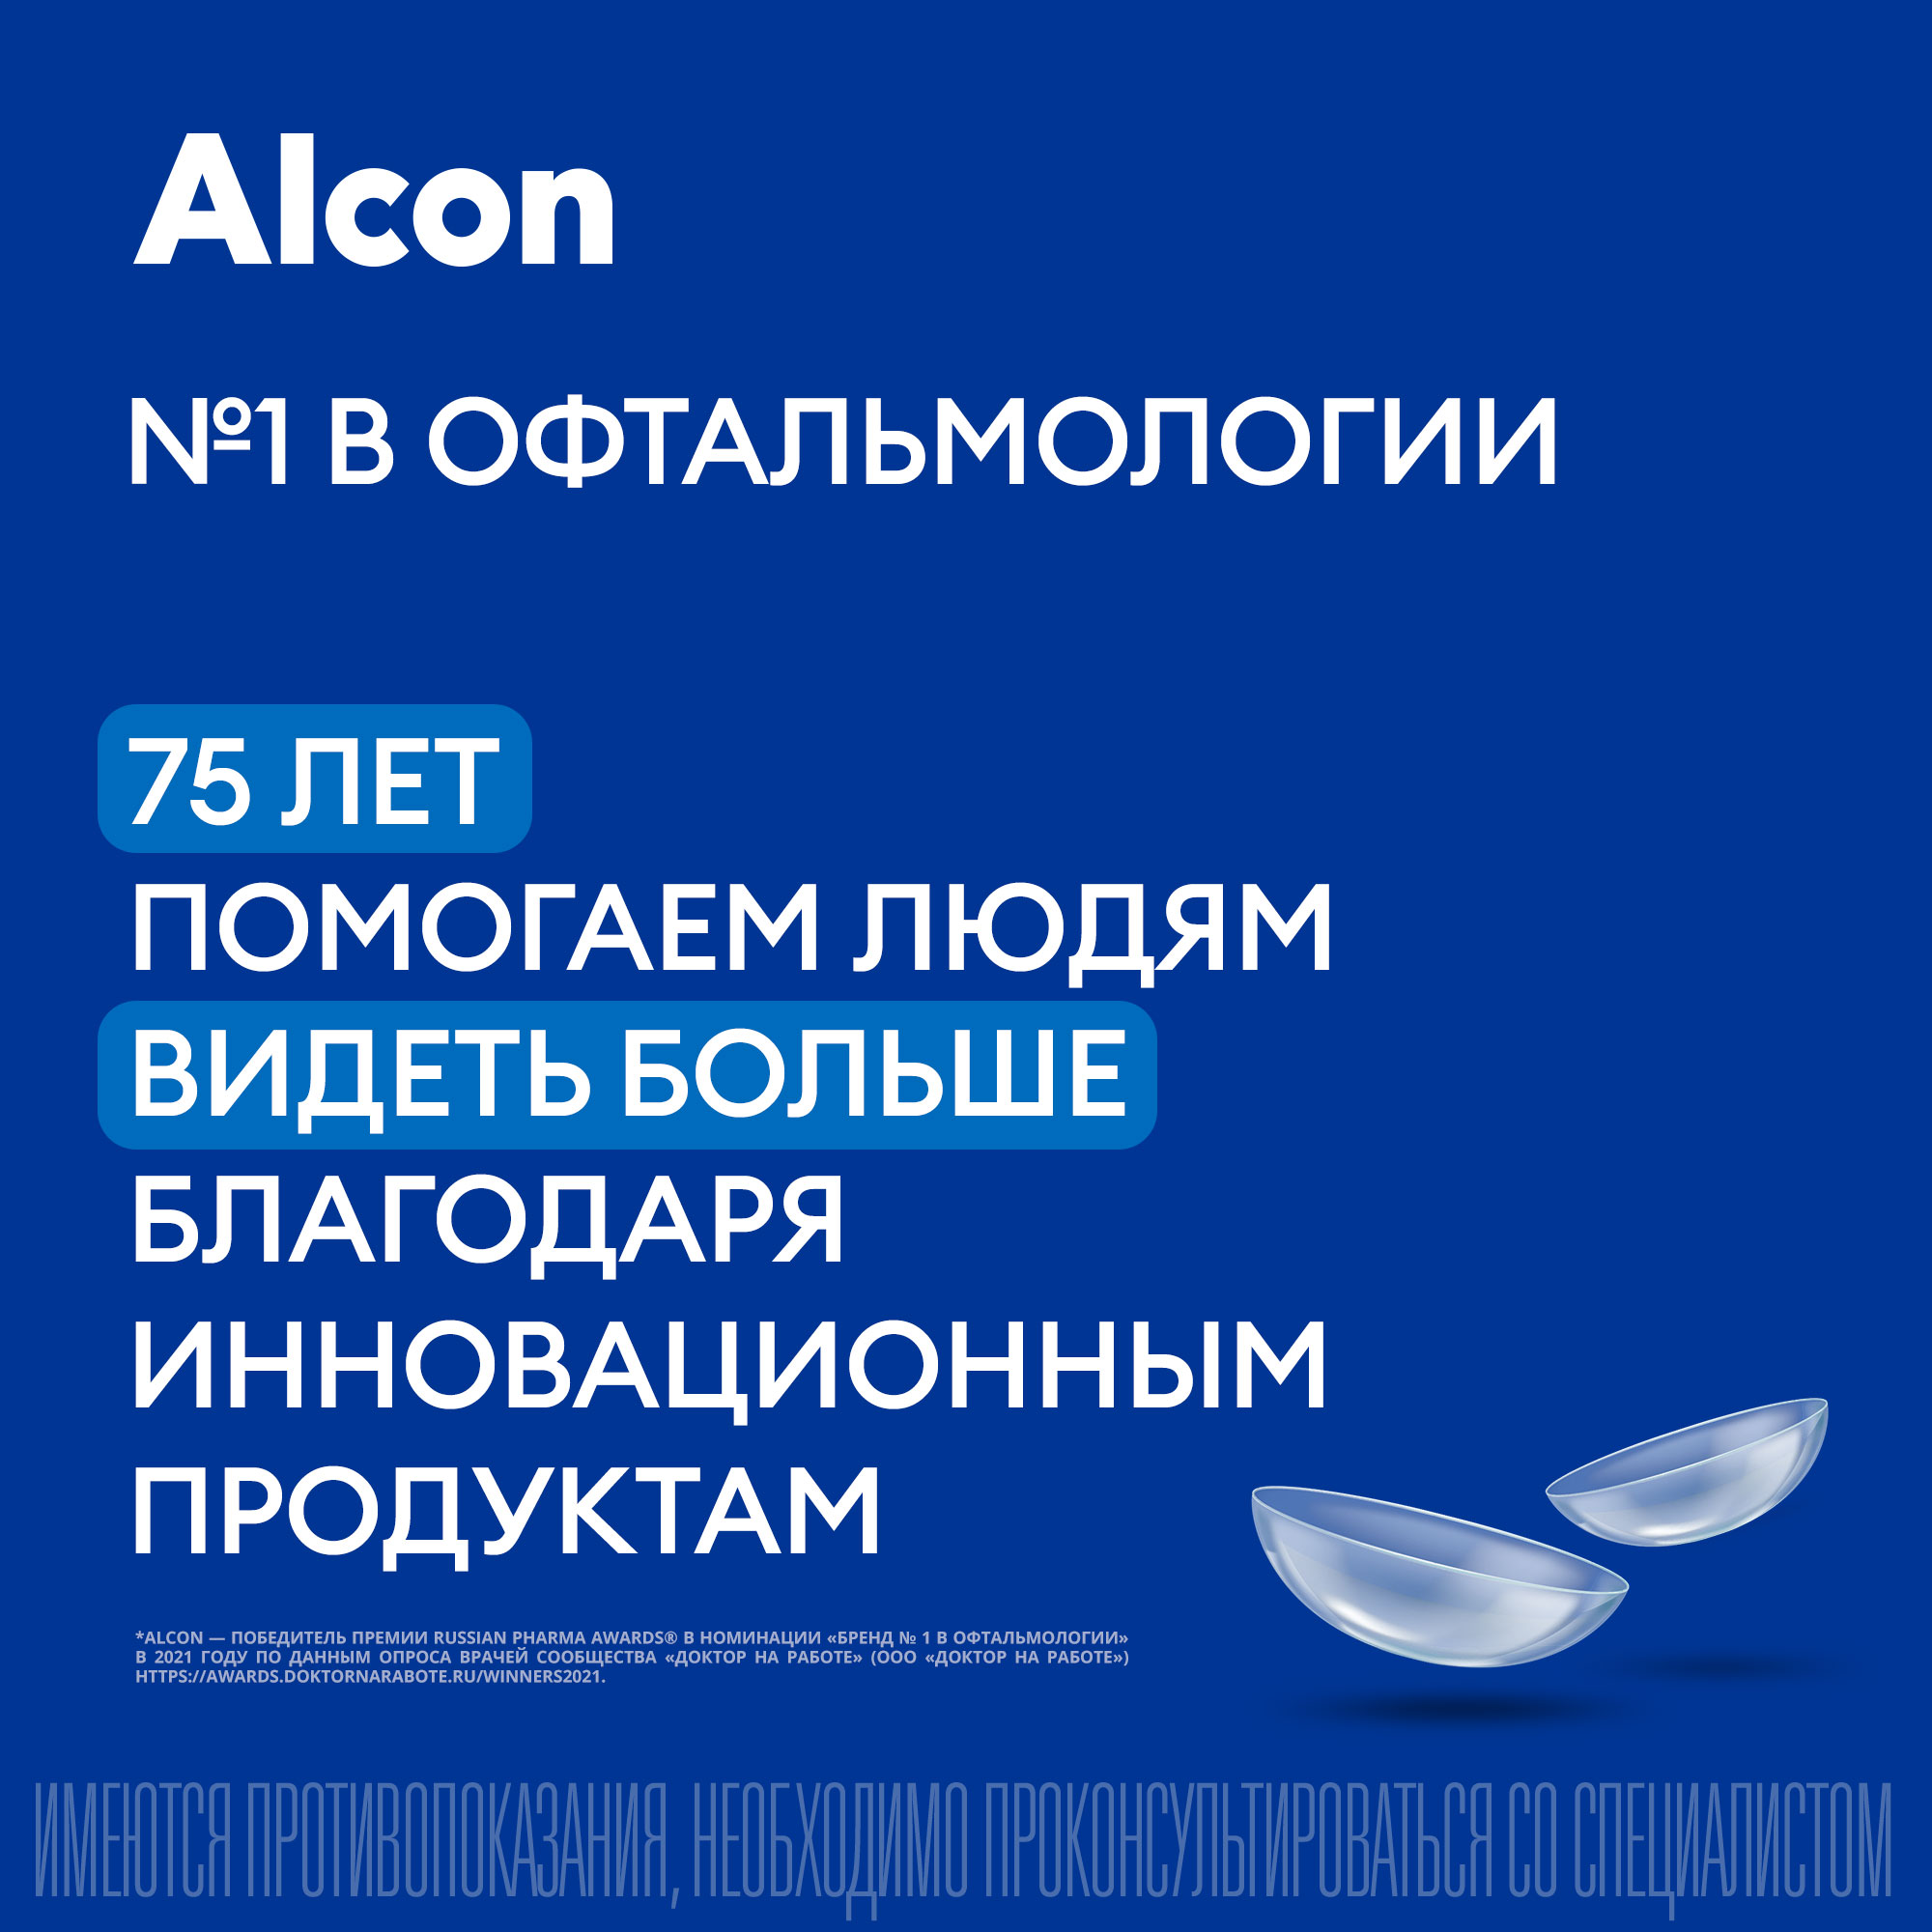 Контактные линзы Alcon Air optix Plus HydraGlyde 3 